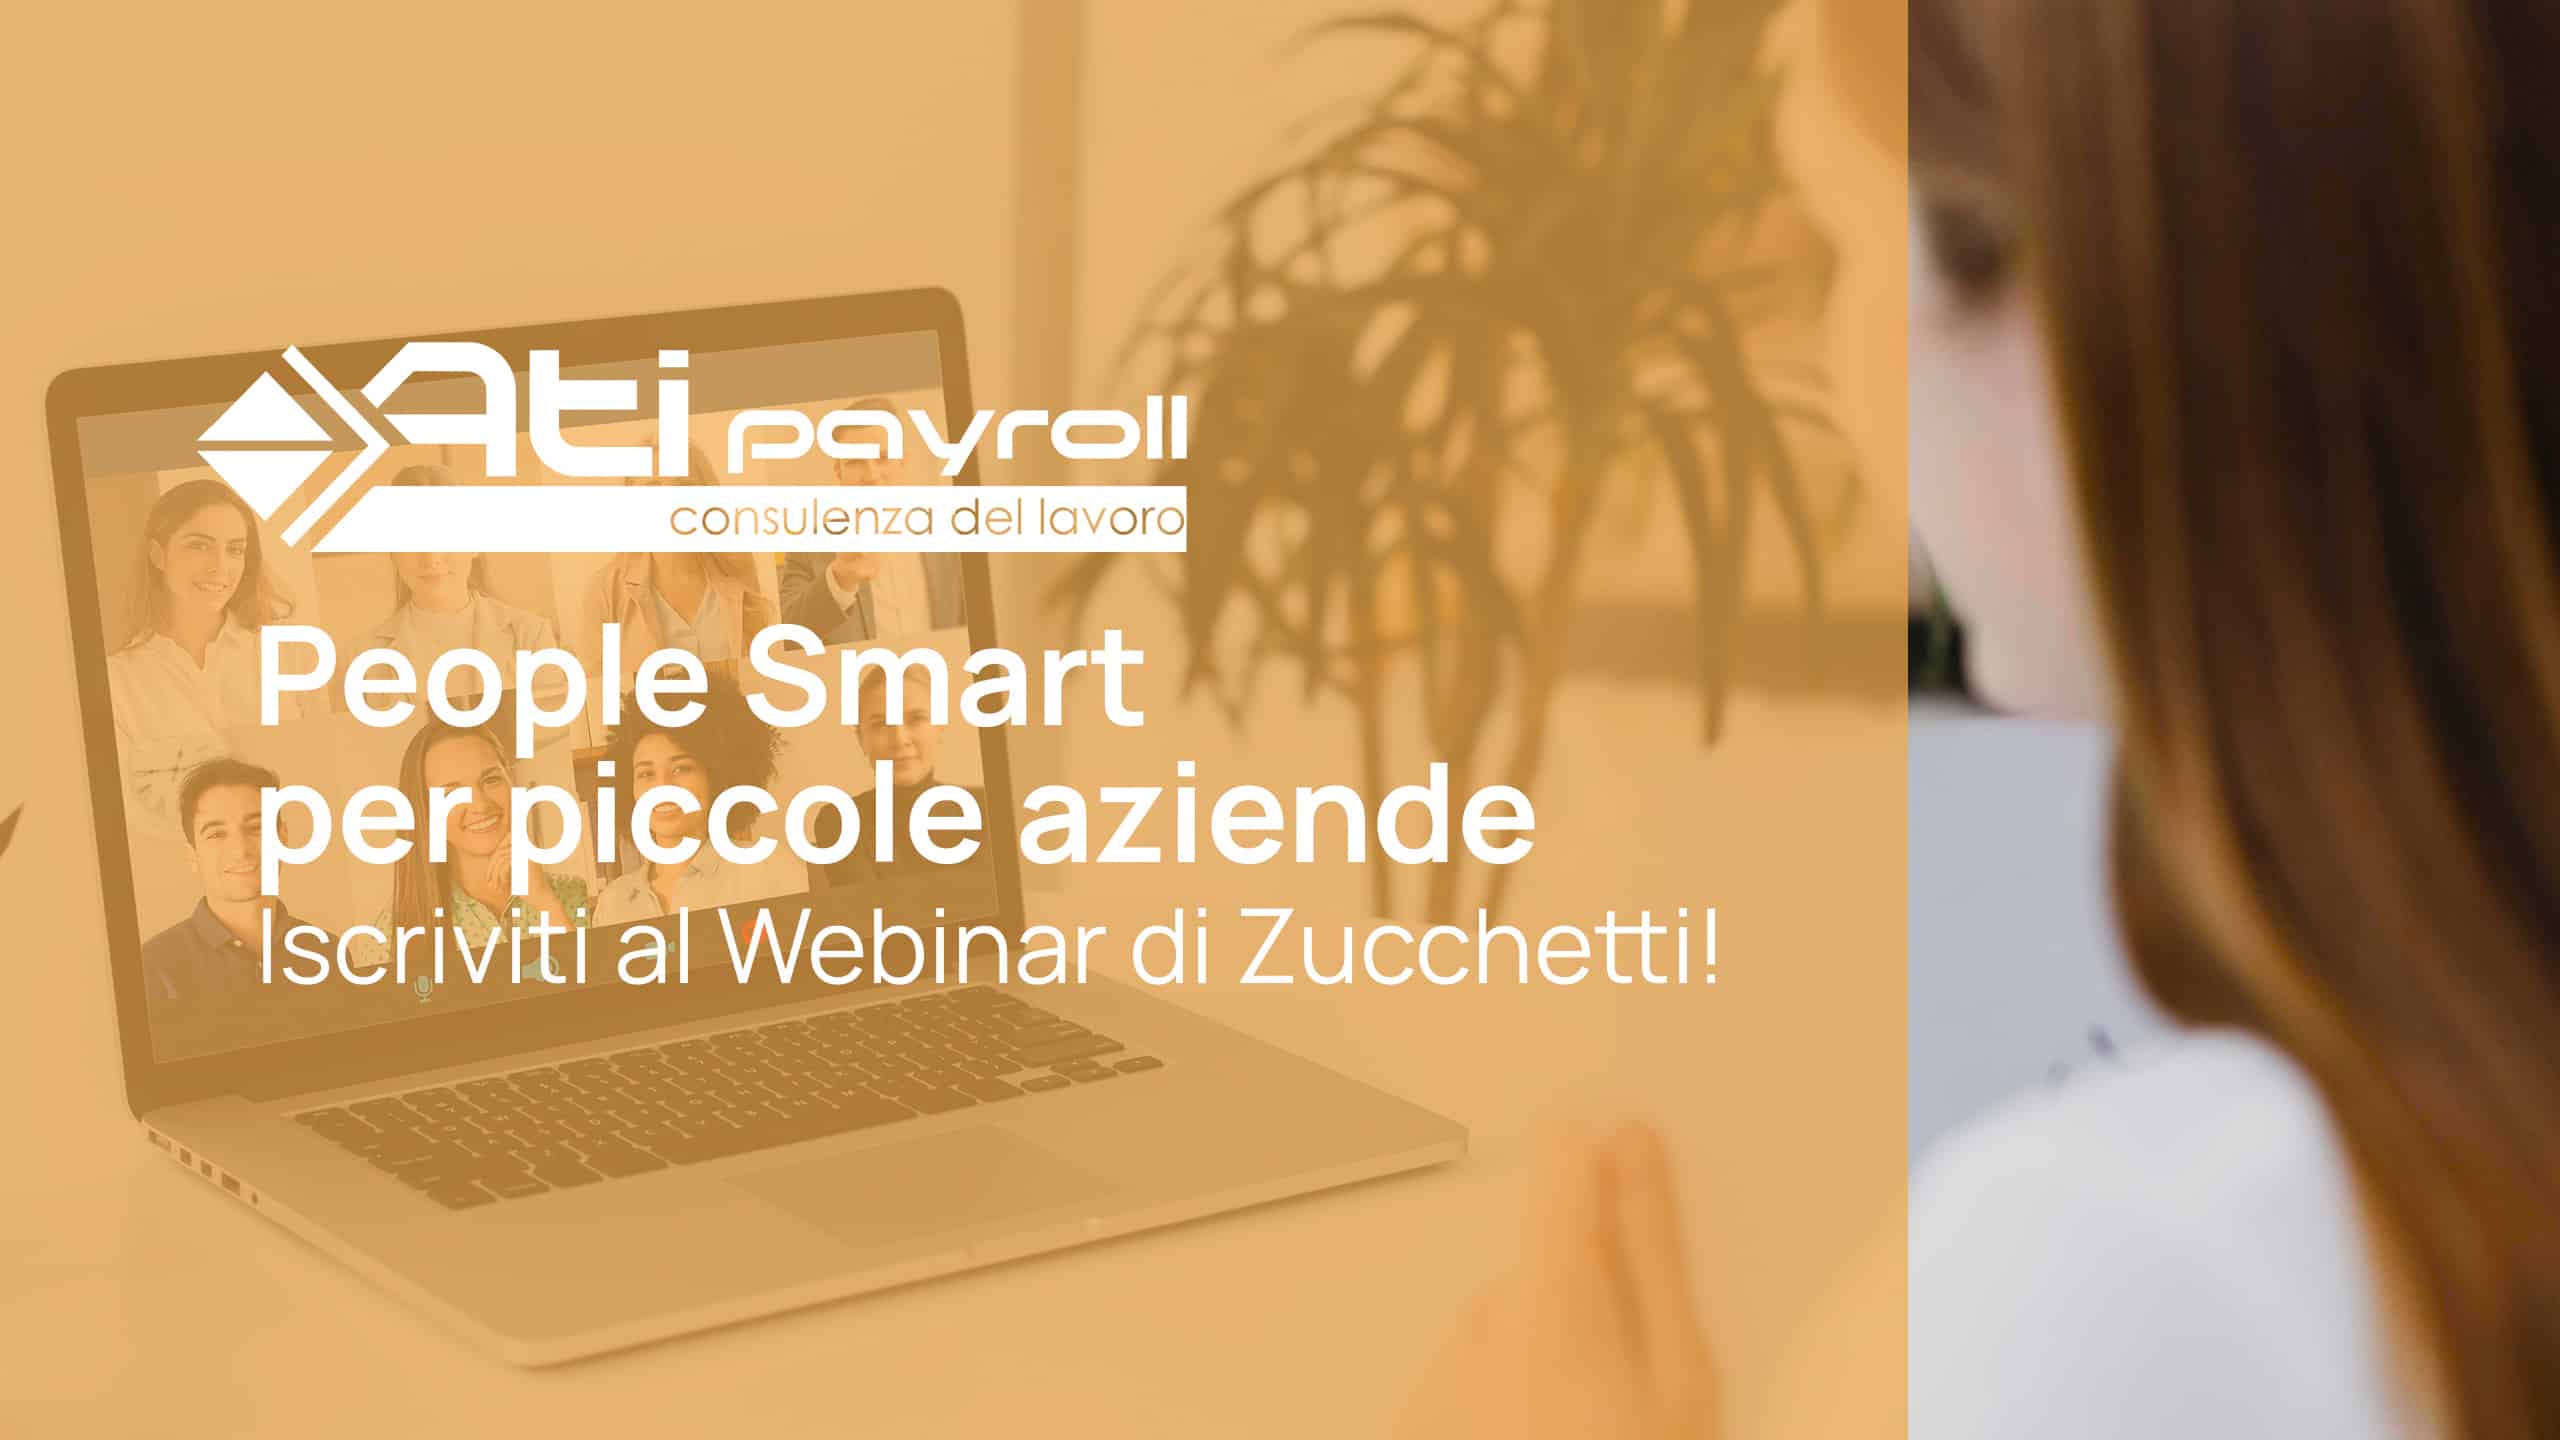 Applicativo People Smart per piccole aziende: iscriviti al nuovo Webinar di Zucchetti!